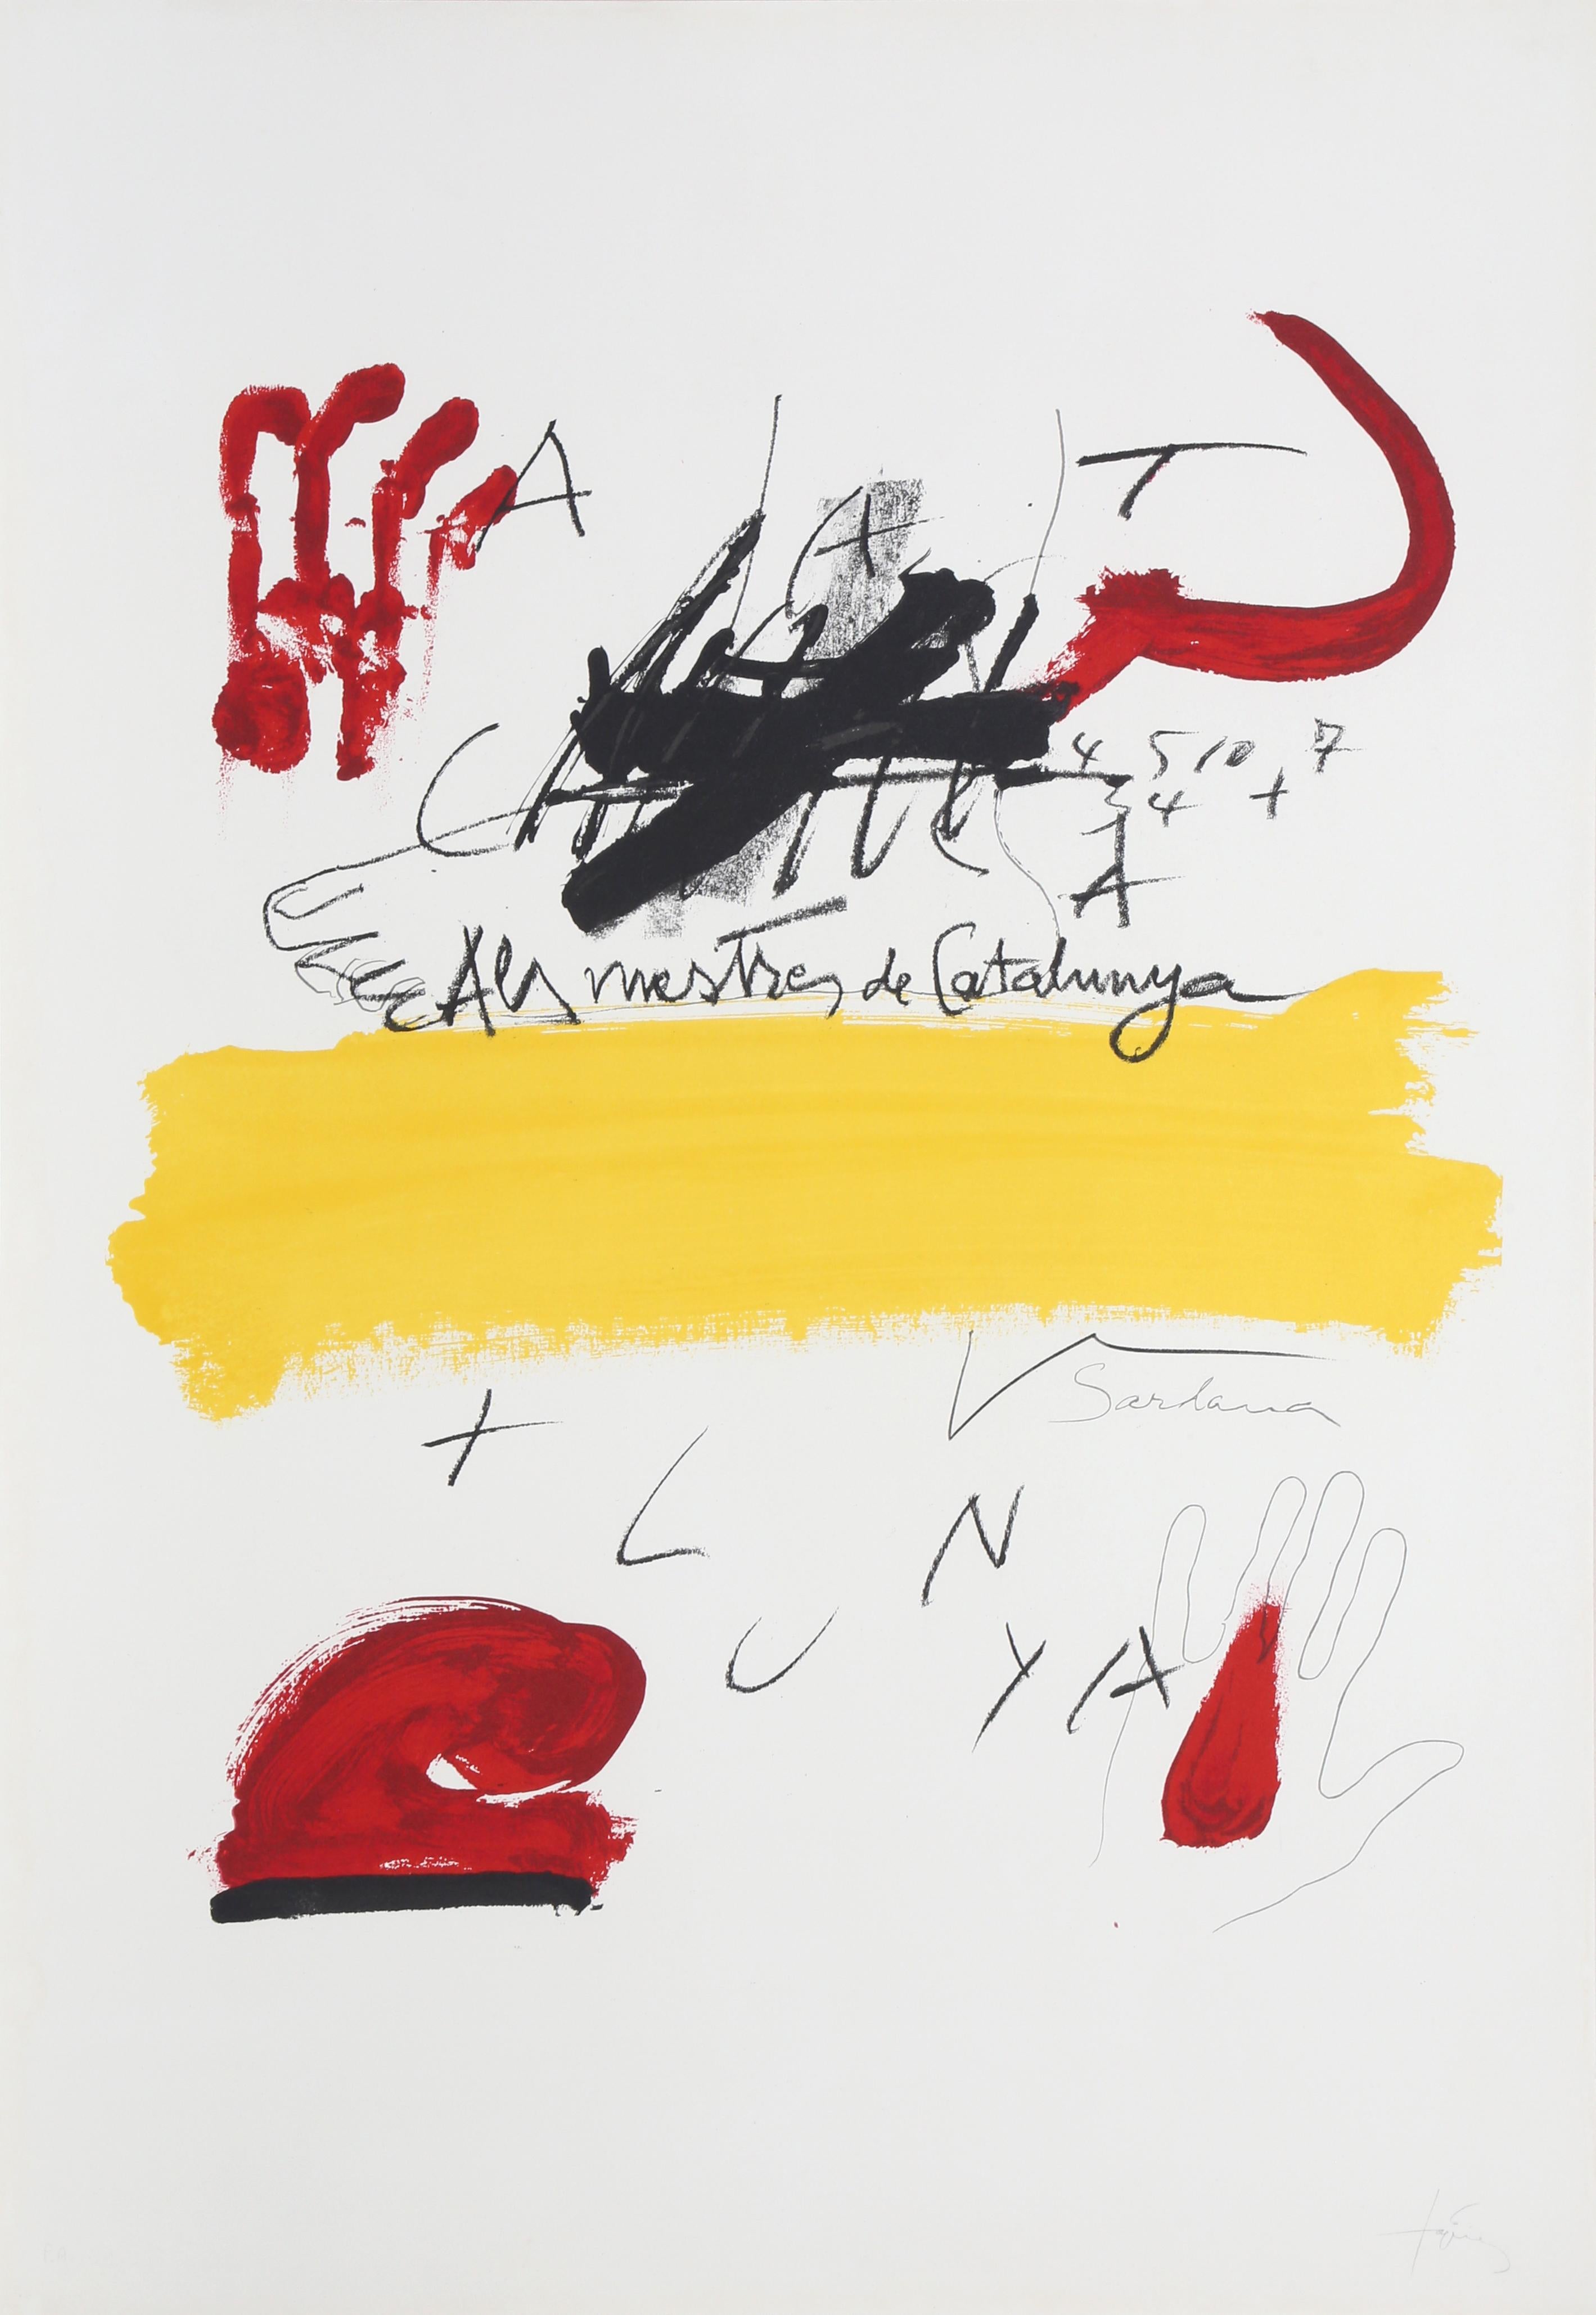 Antoni Tàpies Abstract Print - No. 2 from "Als Mestres de Catalunya, " Lithograph by Antoni Tapies